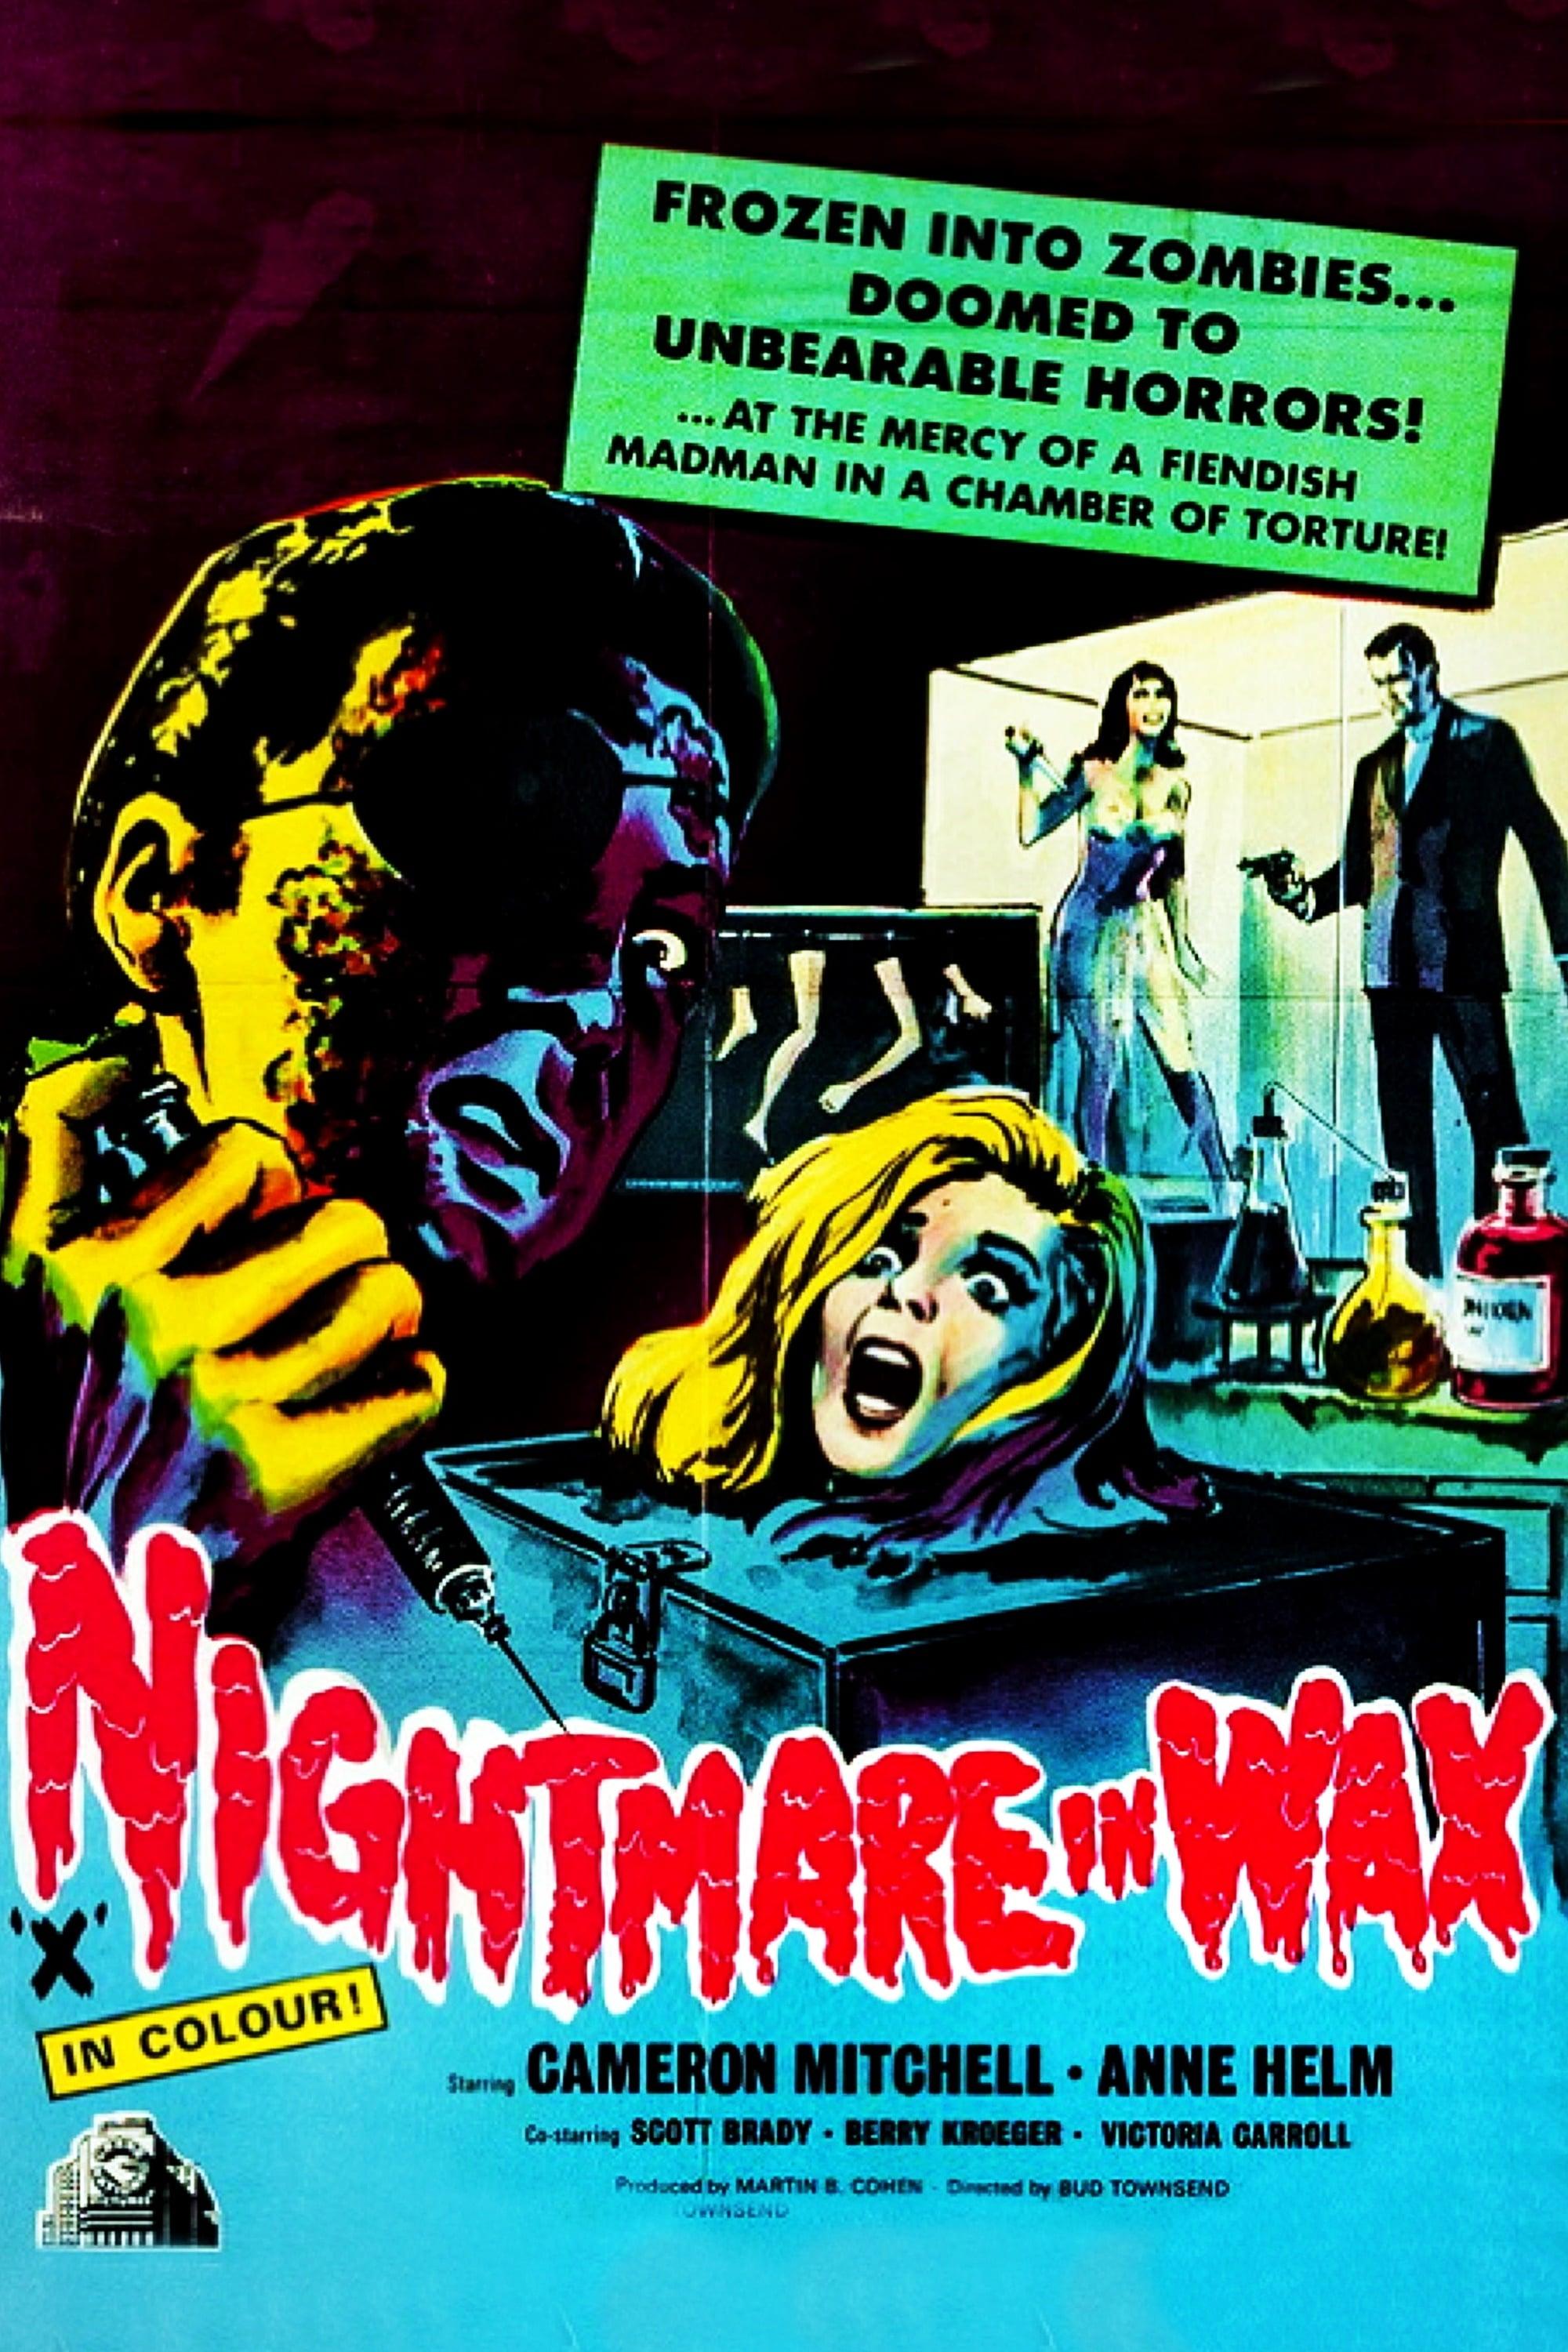 Nightmare in Wax poster